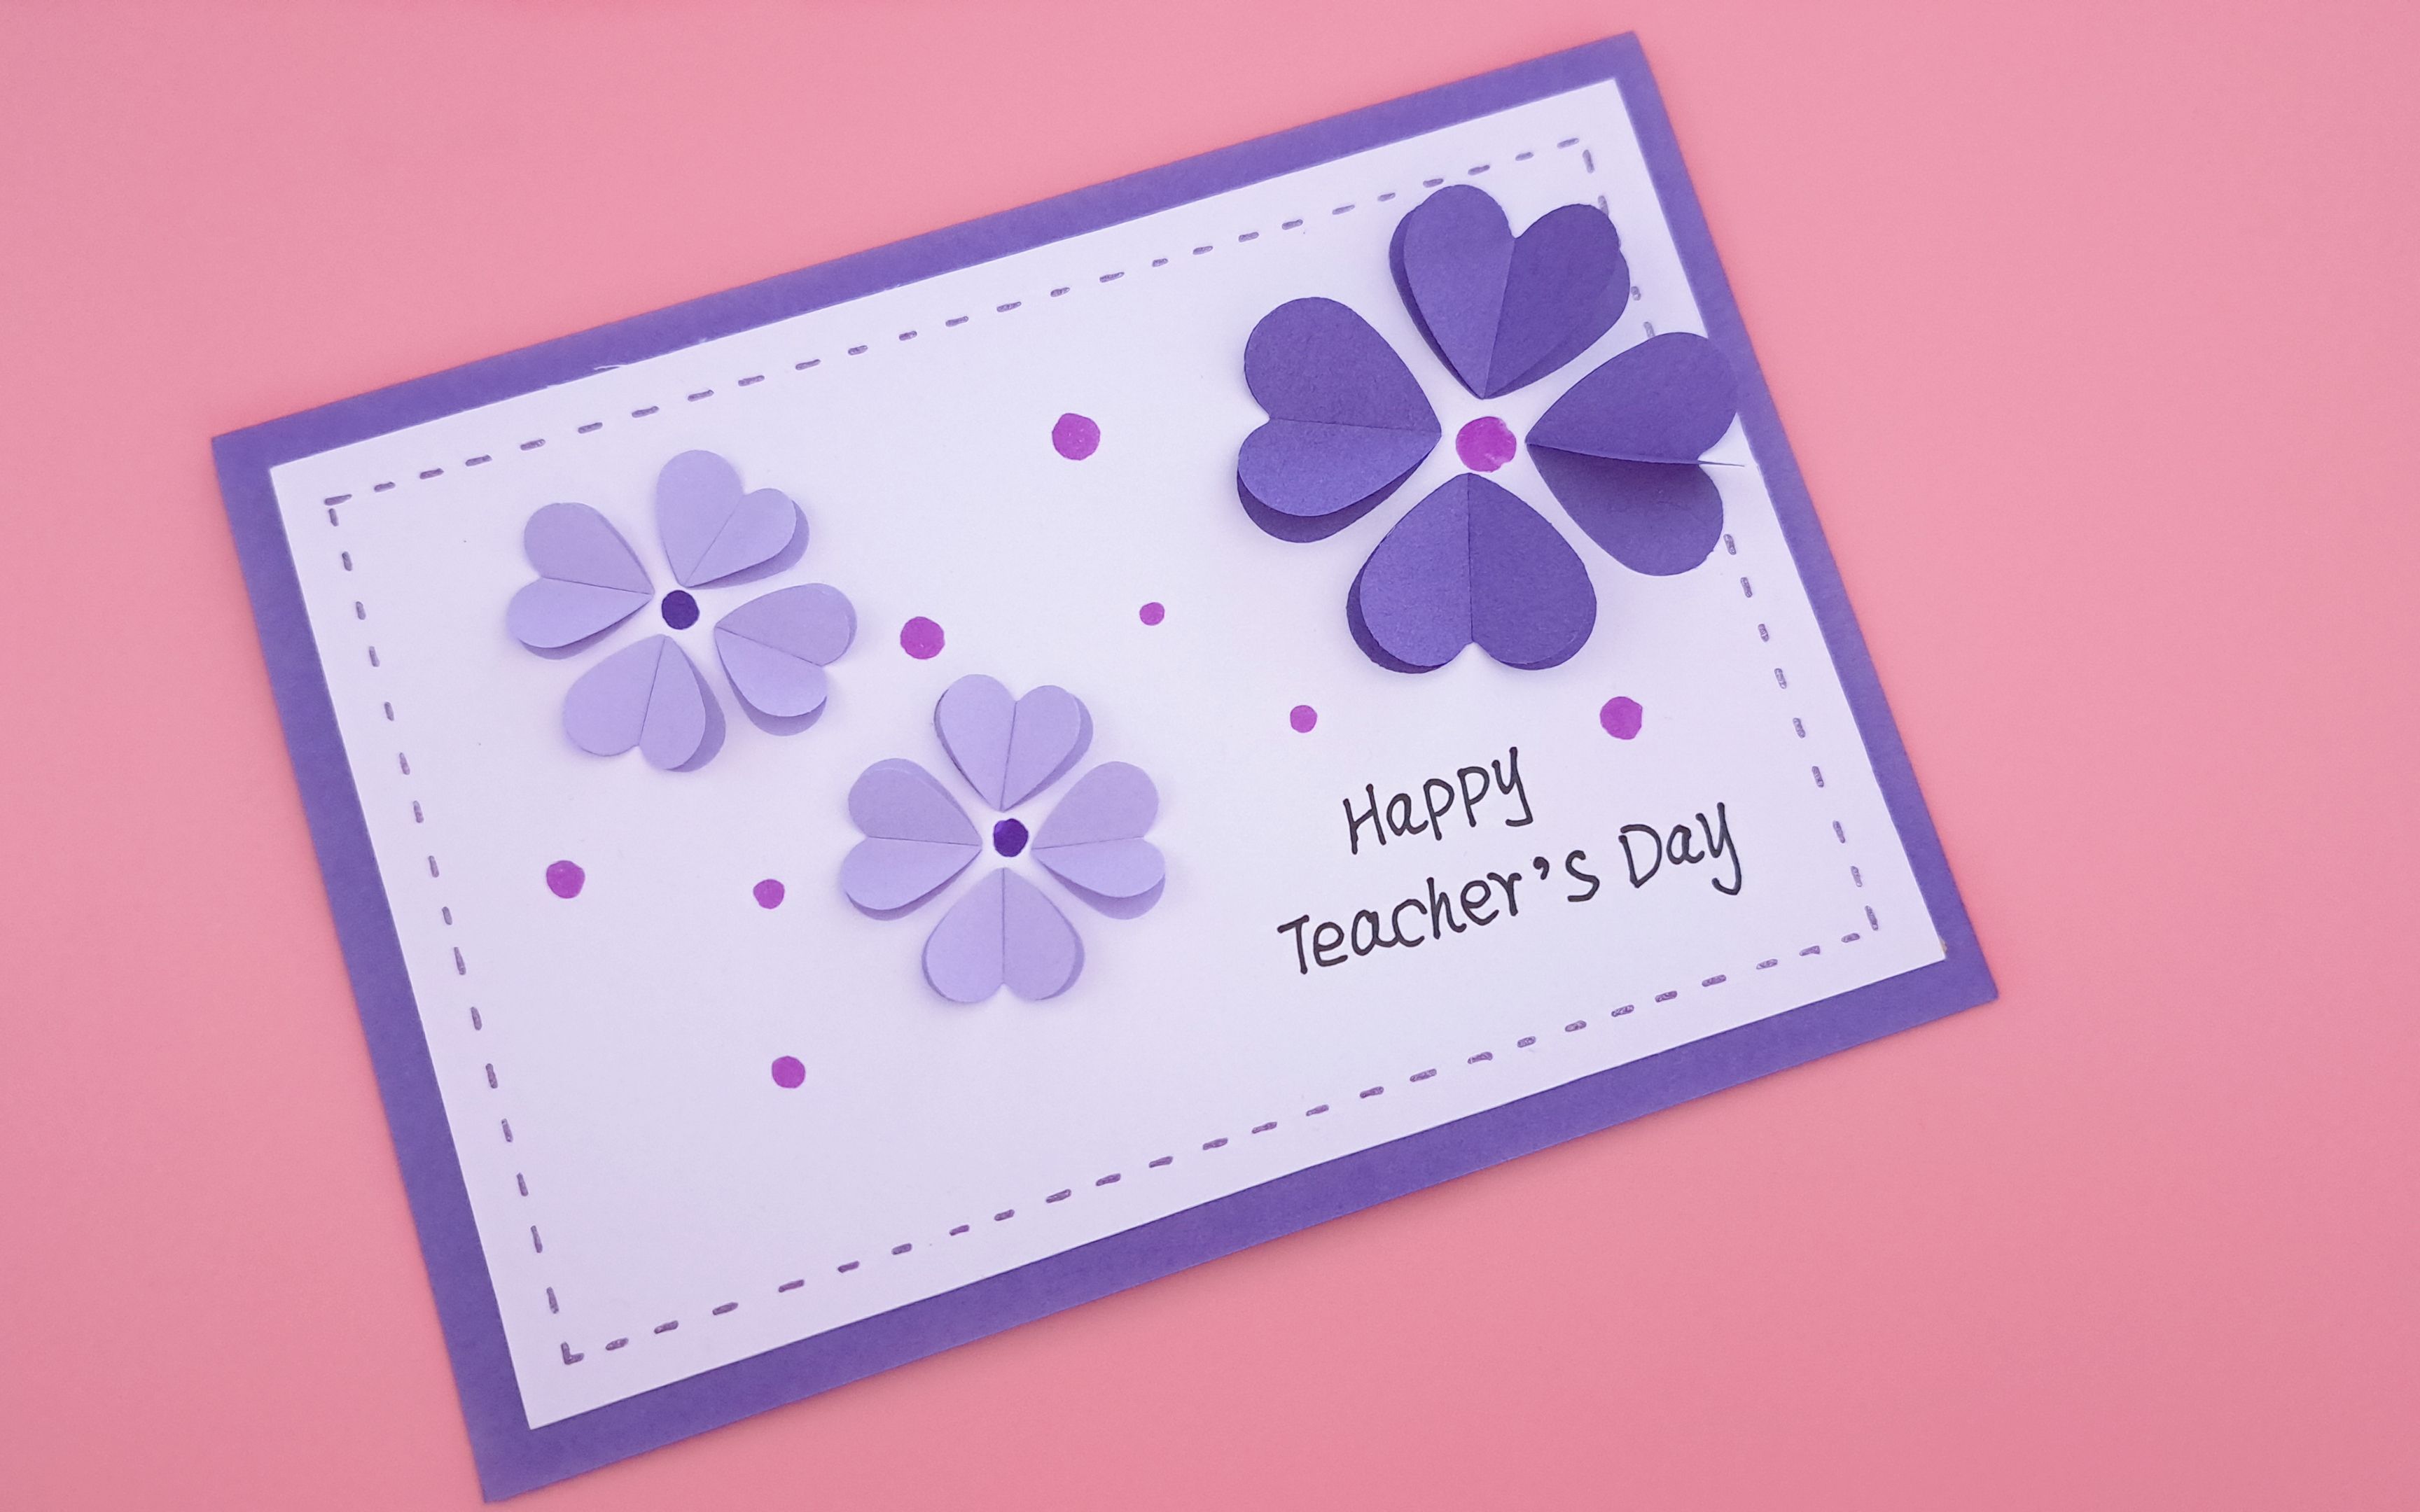 教师节快到了，自制漂亮的教师节手工贺卡，给老师一个惊喜